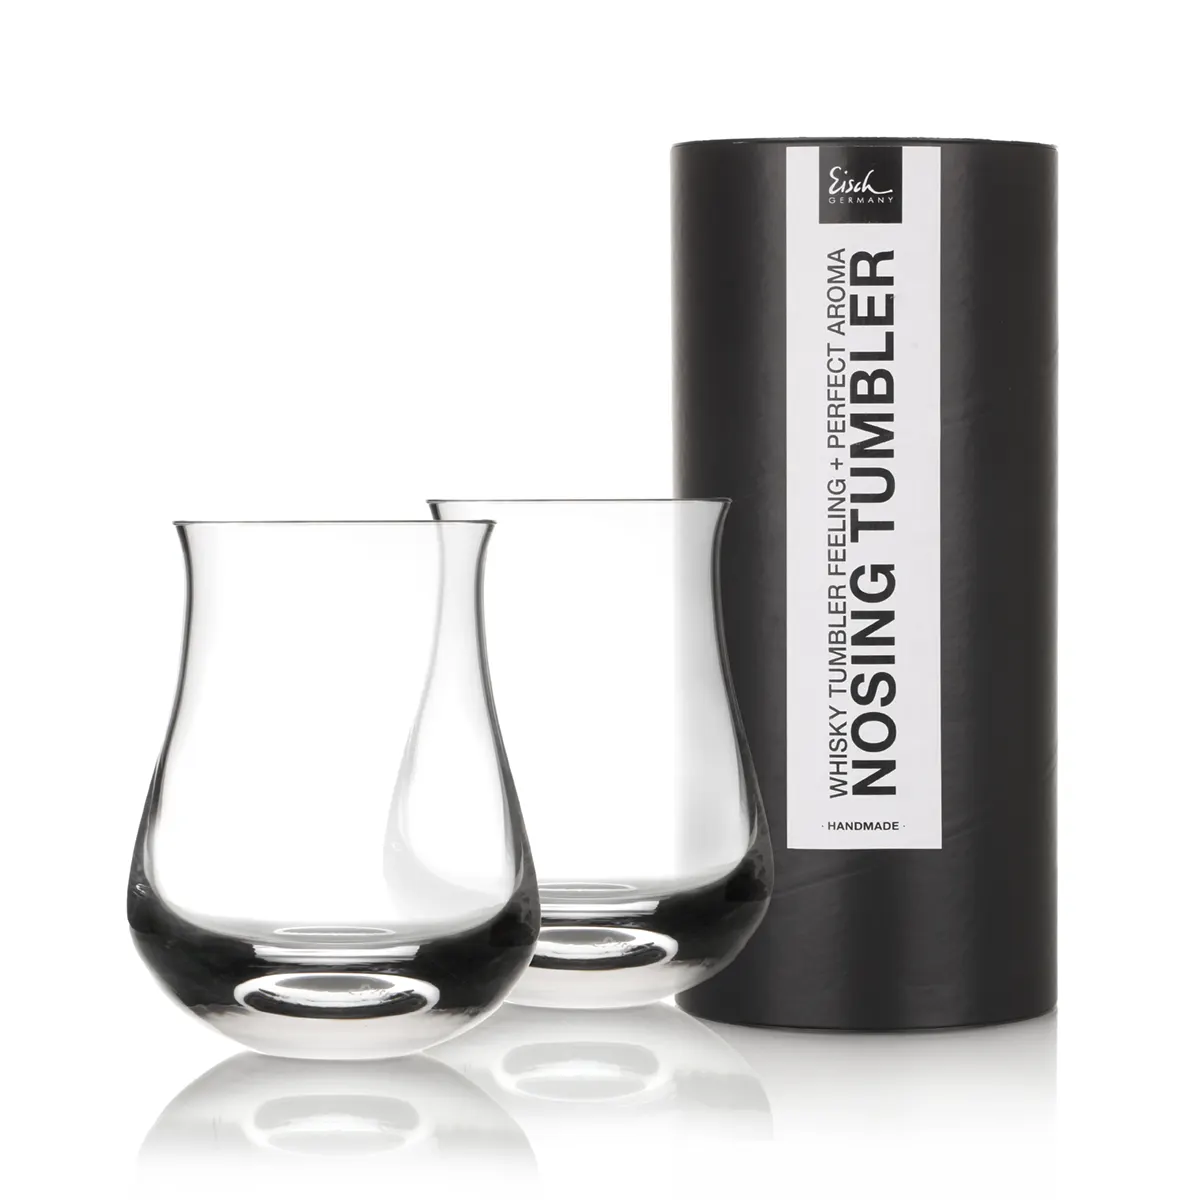 Eisch Whisky Set - Gentleman - 2 Nosing Tumbler aus Kristallglas in Geschenkröhre